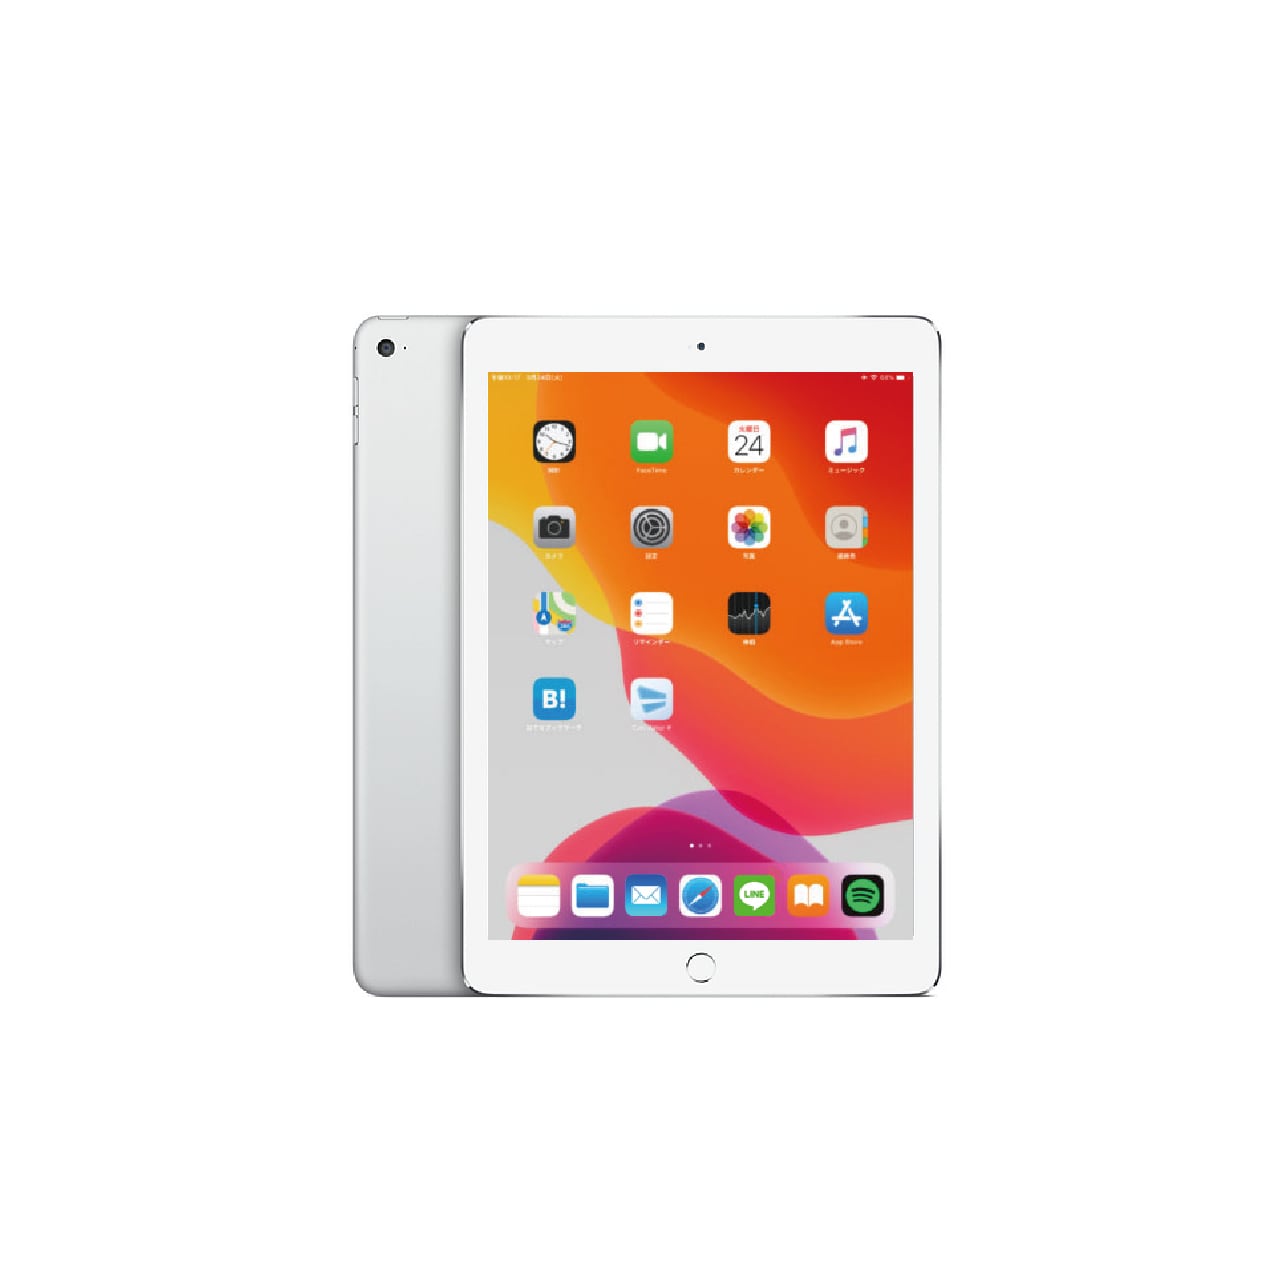 iPad Air 2 Cellularシルバーバッテリー最大容量90 - iPad本体